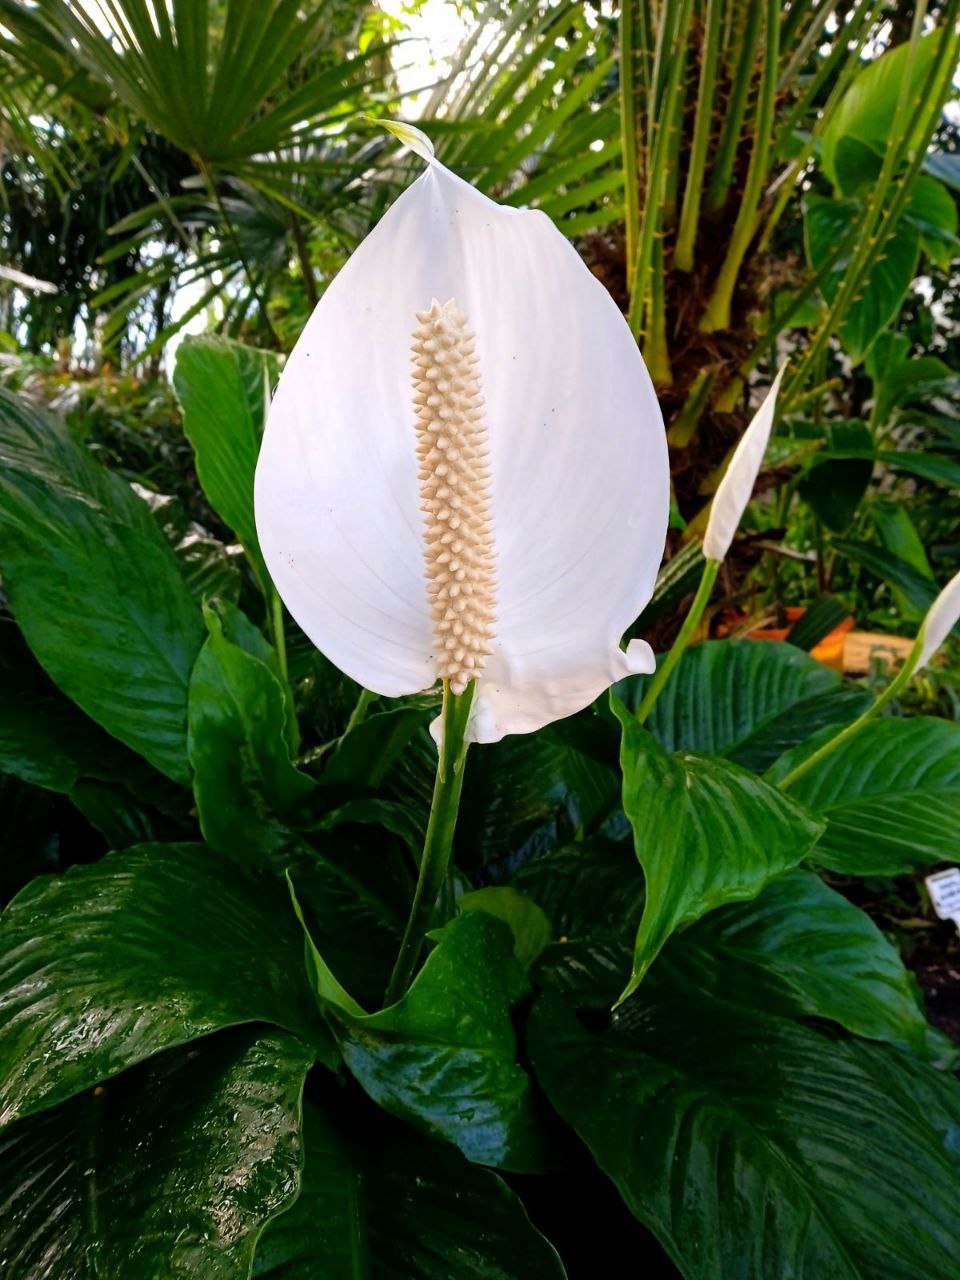 Спатифиллум. Ещё это растение называют «женское счастье», "женский цветок" или "цветок любви" и приписывают способность улучшает энергетику в доме. В природе распространено от Центральной и Южной Америки до Восточной Азии. 